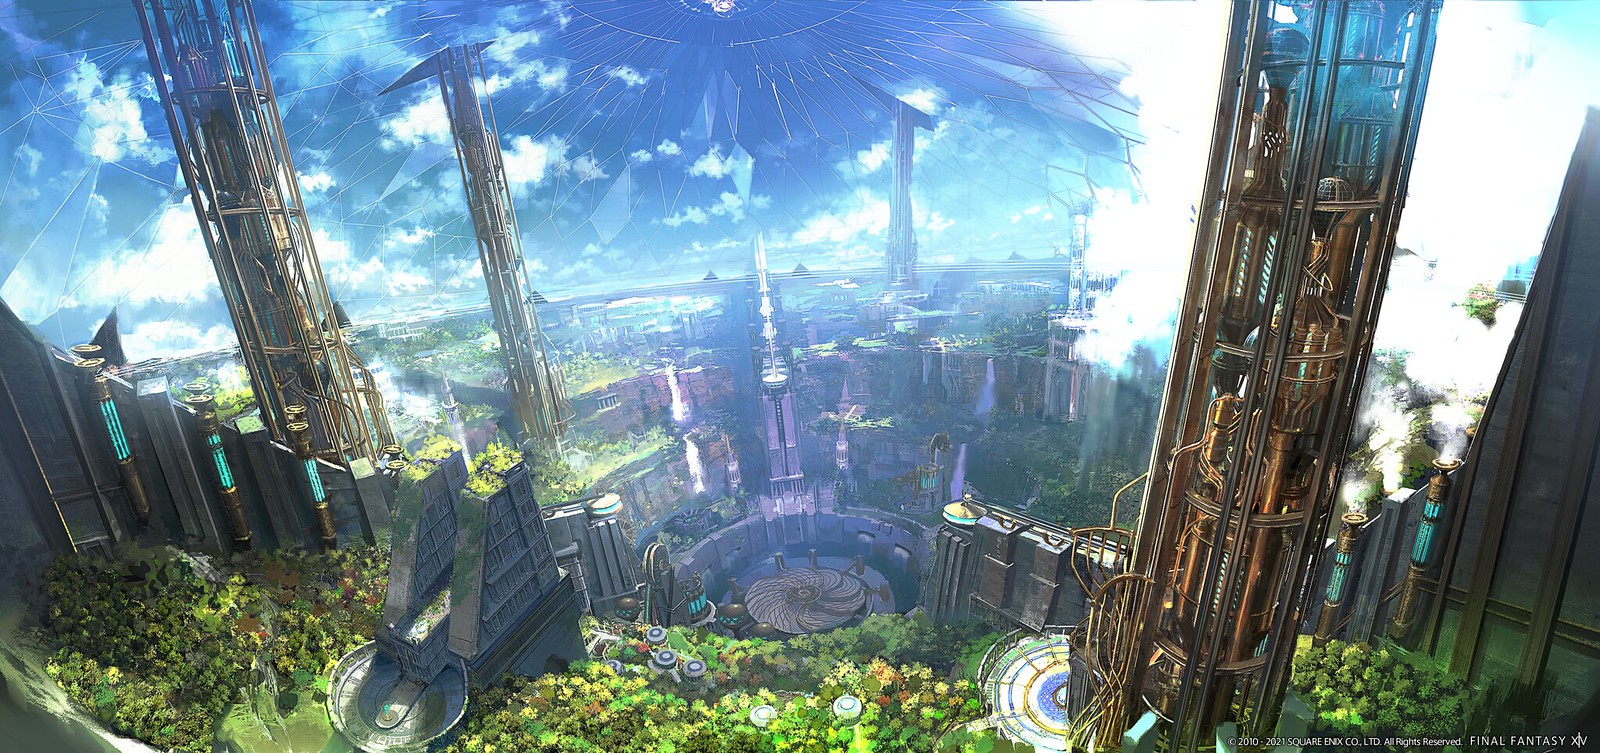 Final Fantasy XIV: Endwalker - November 2021 expansion